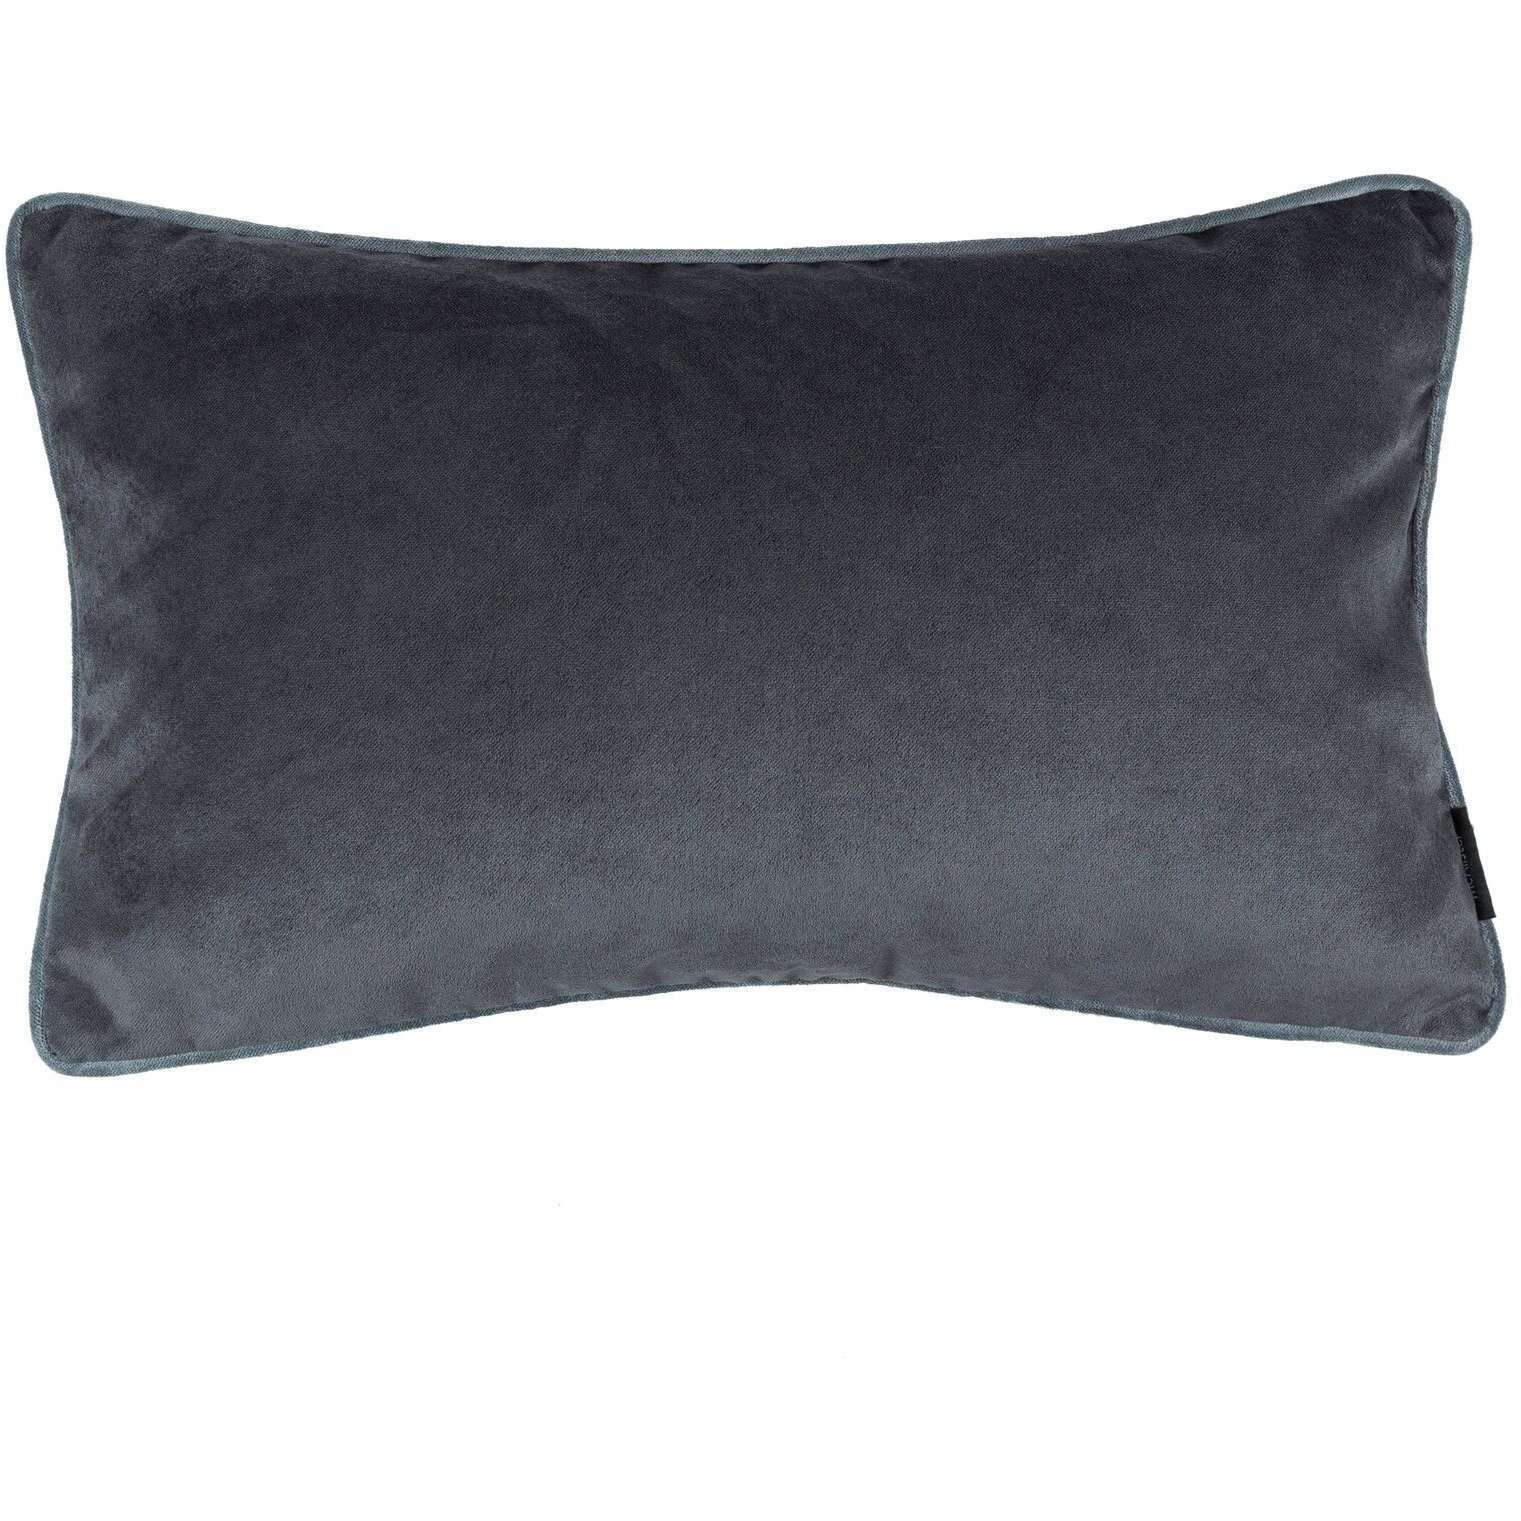 Matt Charcoal Grey Velvet Pillow, Cover Only / 50cm x 30cm